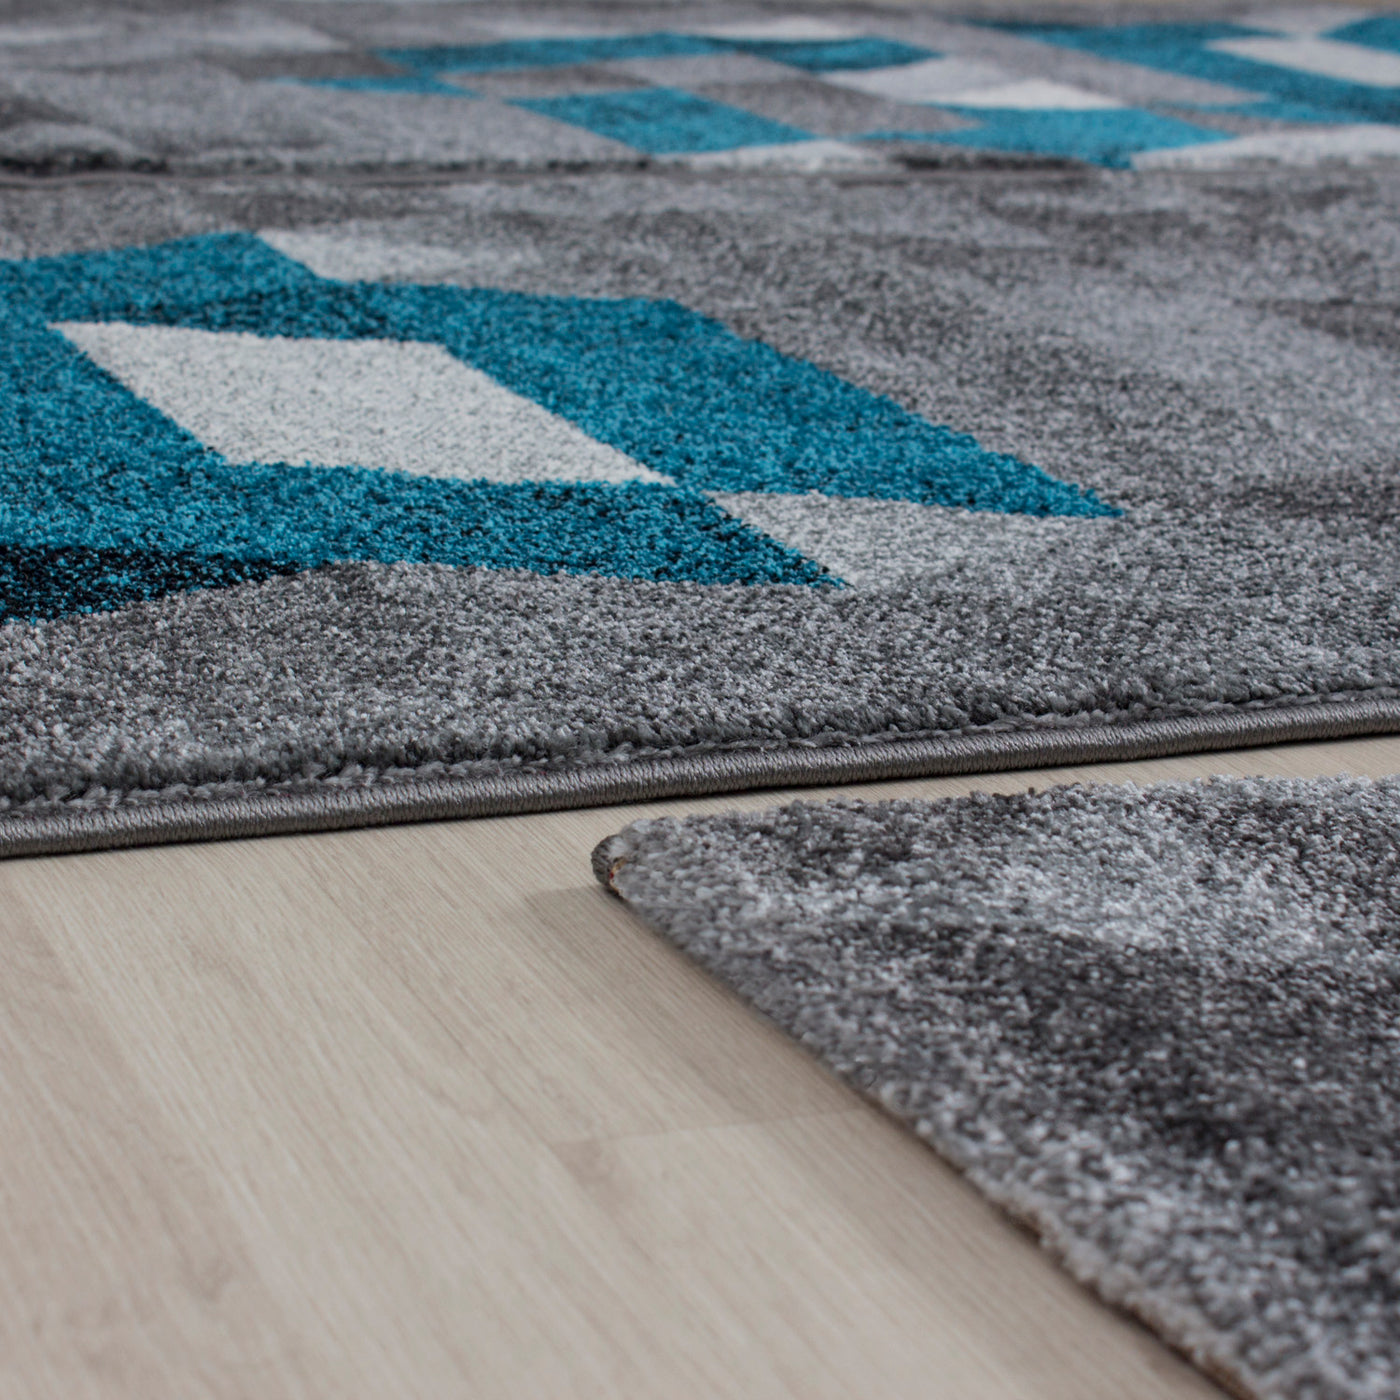 Bettumrandung Teppich abstrakt Kariert Dreieck 3 teilig Läufer Set Schlafzimmer Flur Grau Türkis meliert